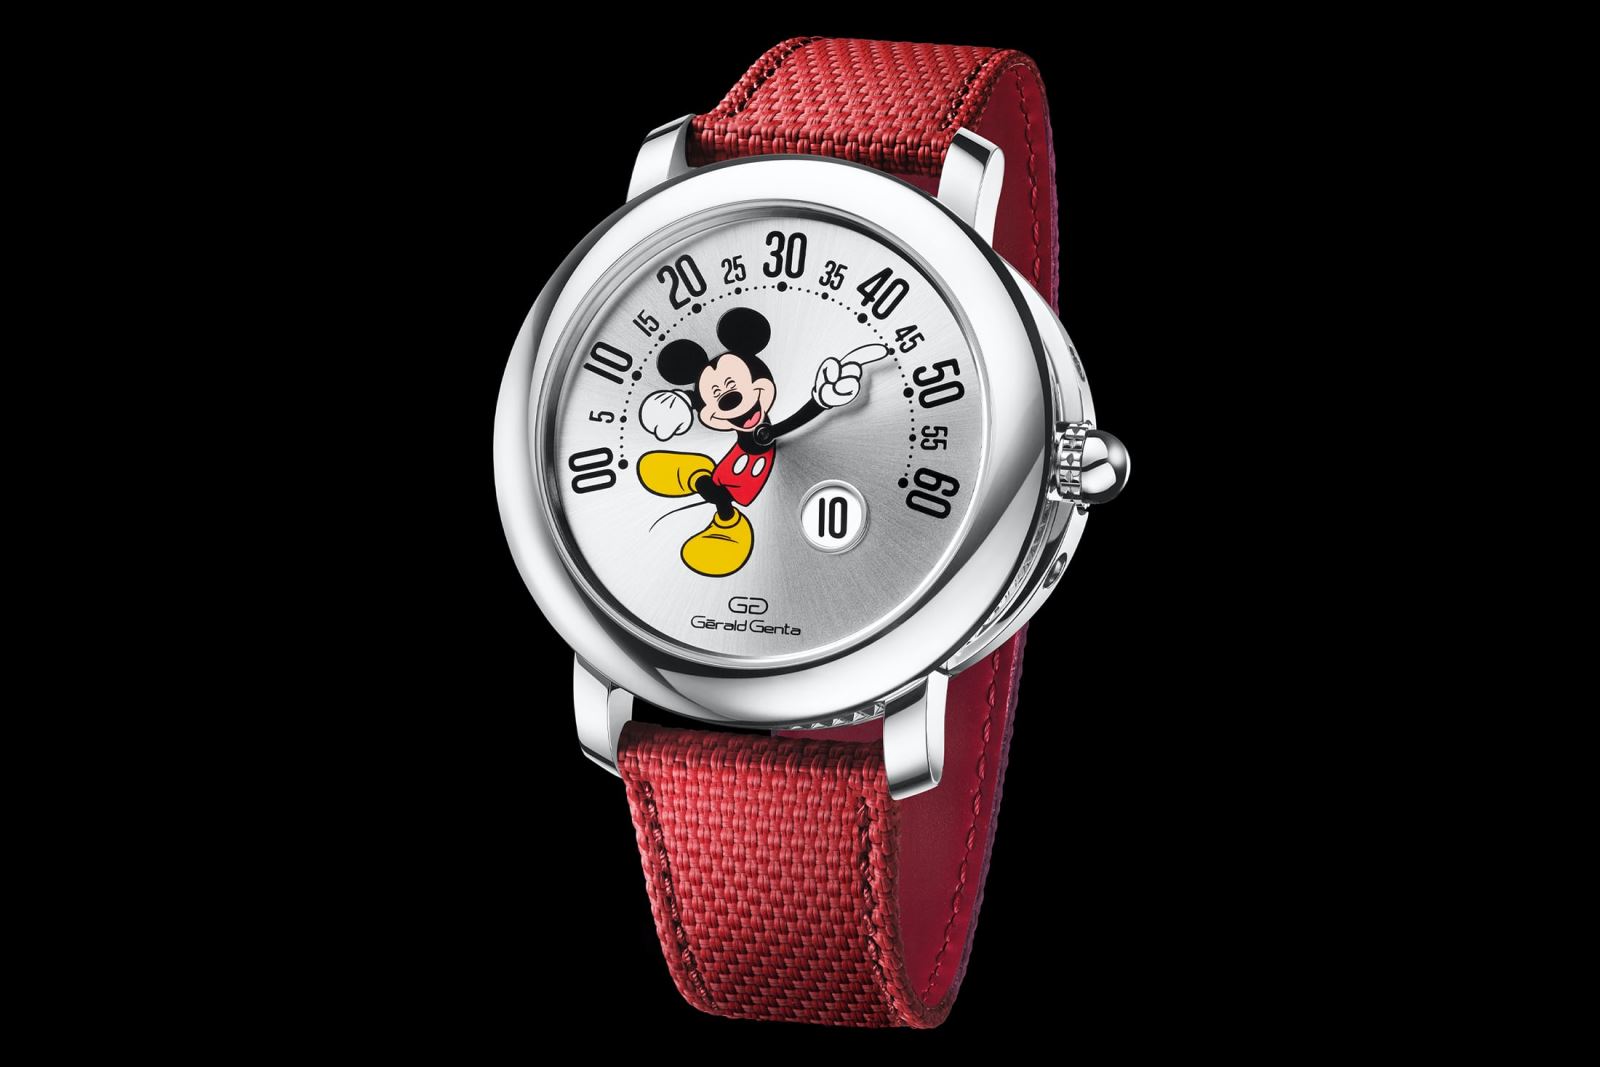 đồng hồ Bvlgari chuột Mickey 2021